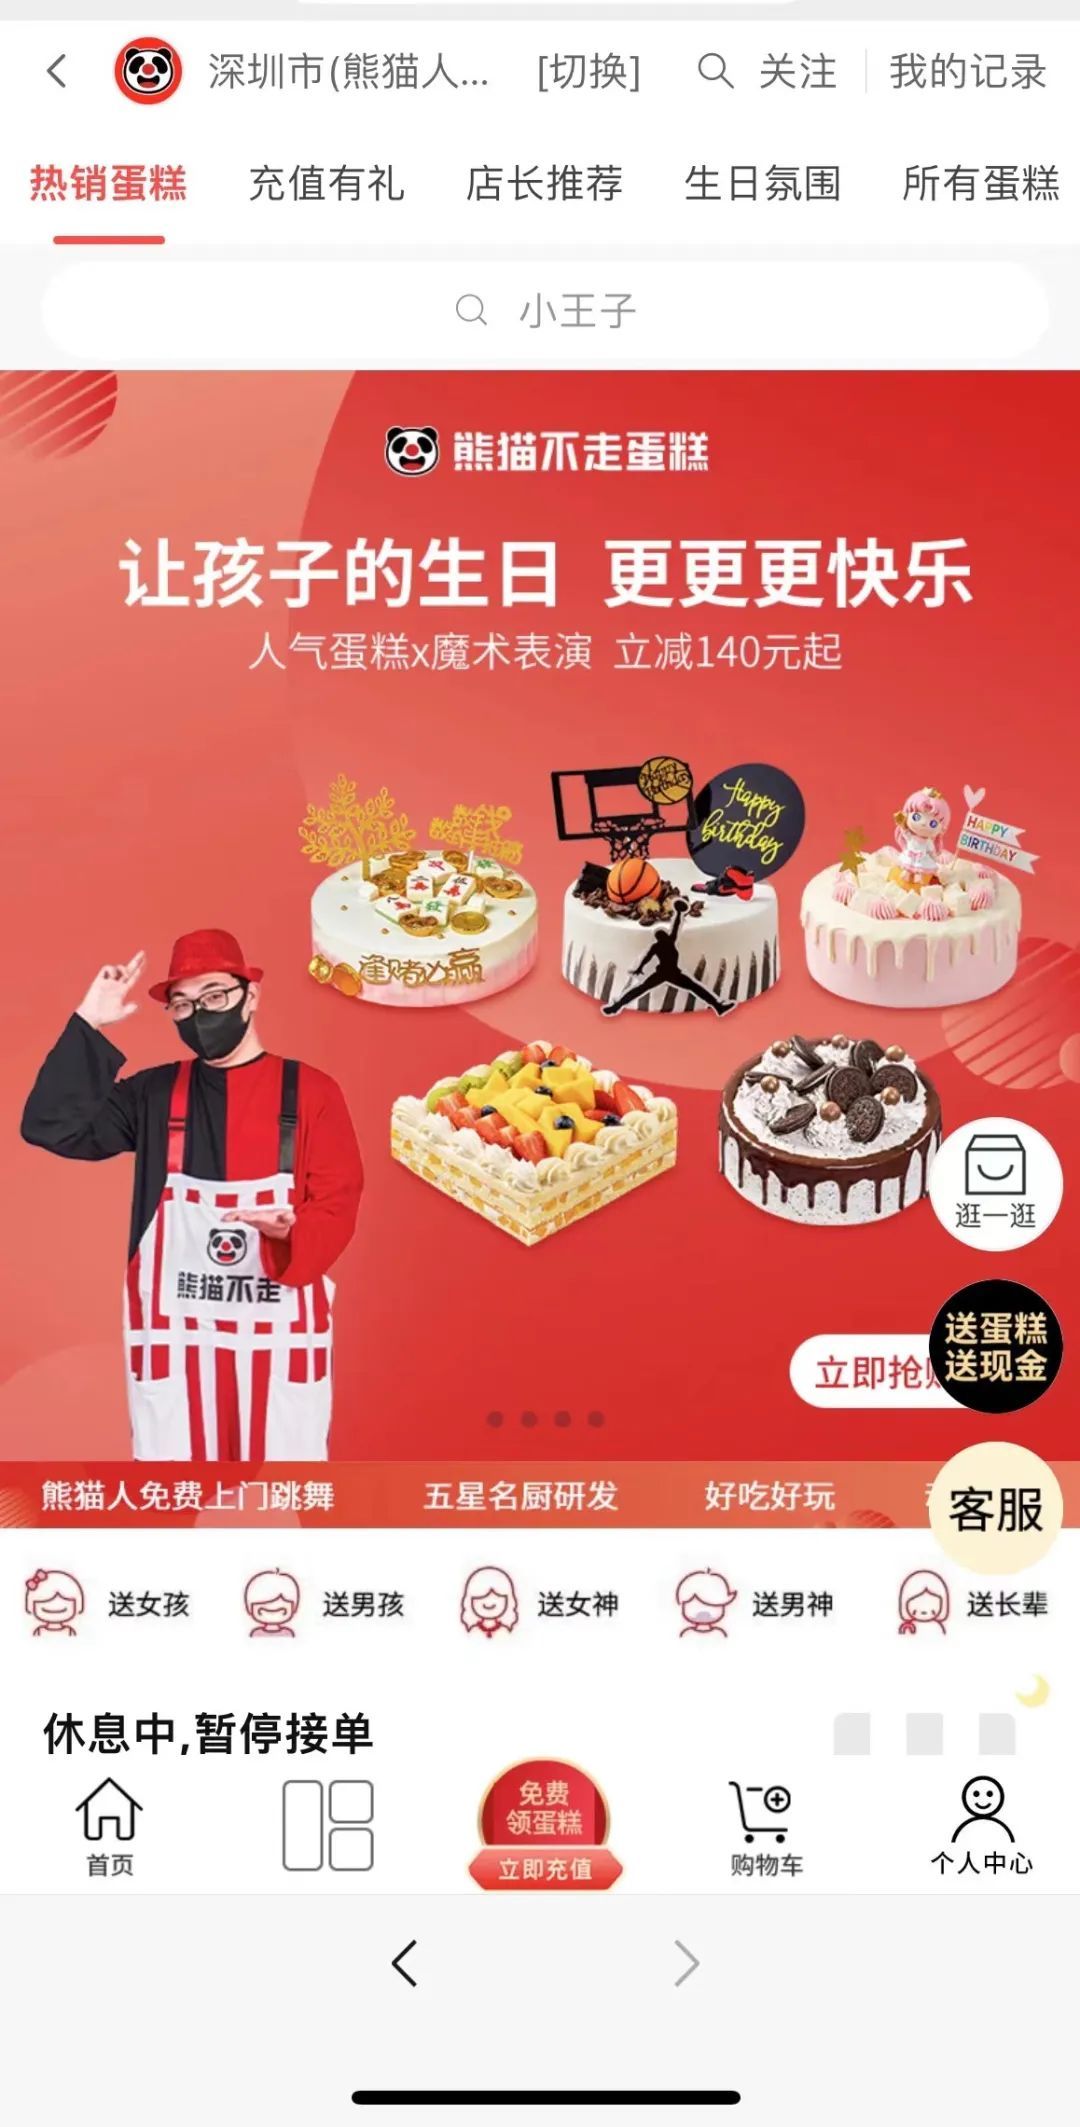 网红烘焙品牌“熊猫不走蛋糕”陷入破产风波！创始人失联等一系列事件持续发酵引起广泛关注